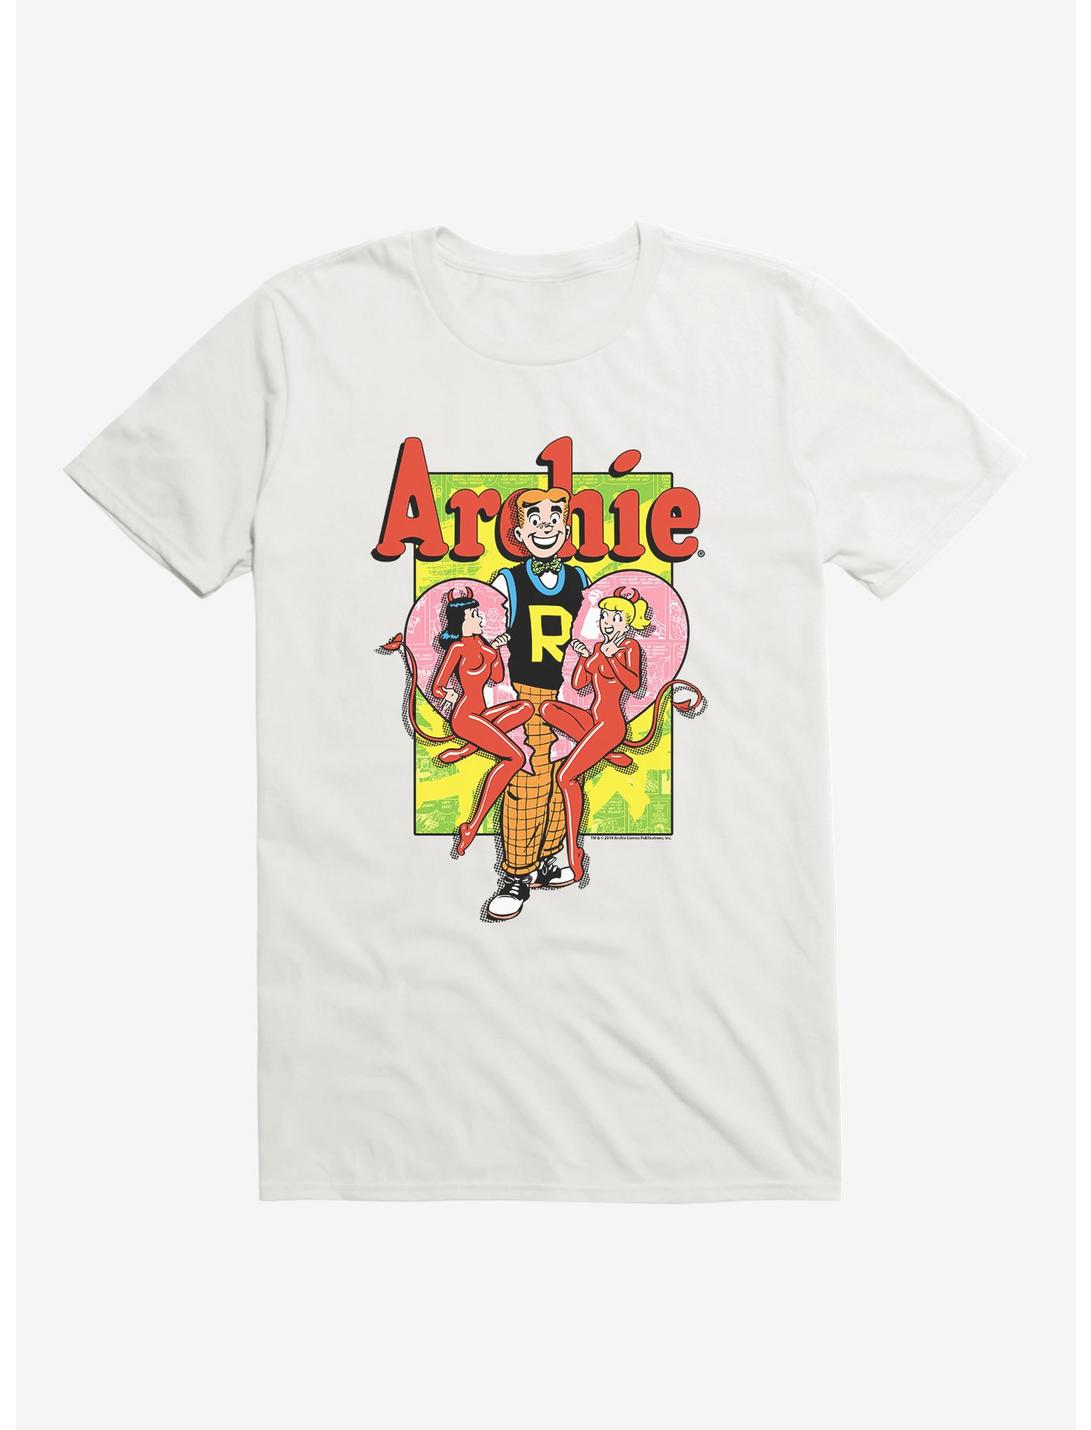 Archie Comics We Love Archie T-Shirt, , hi-res